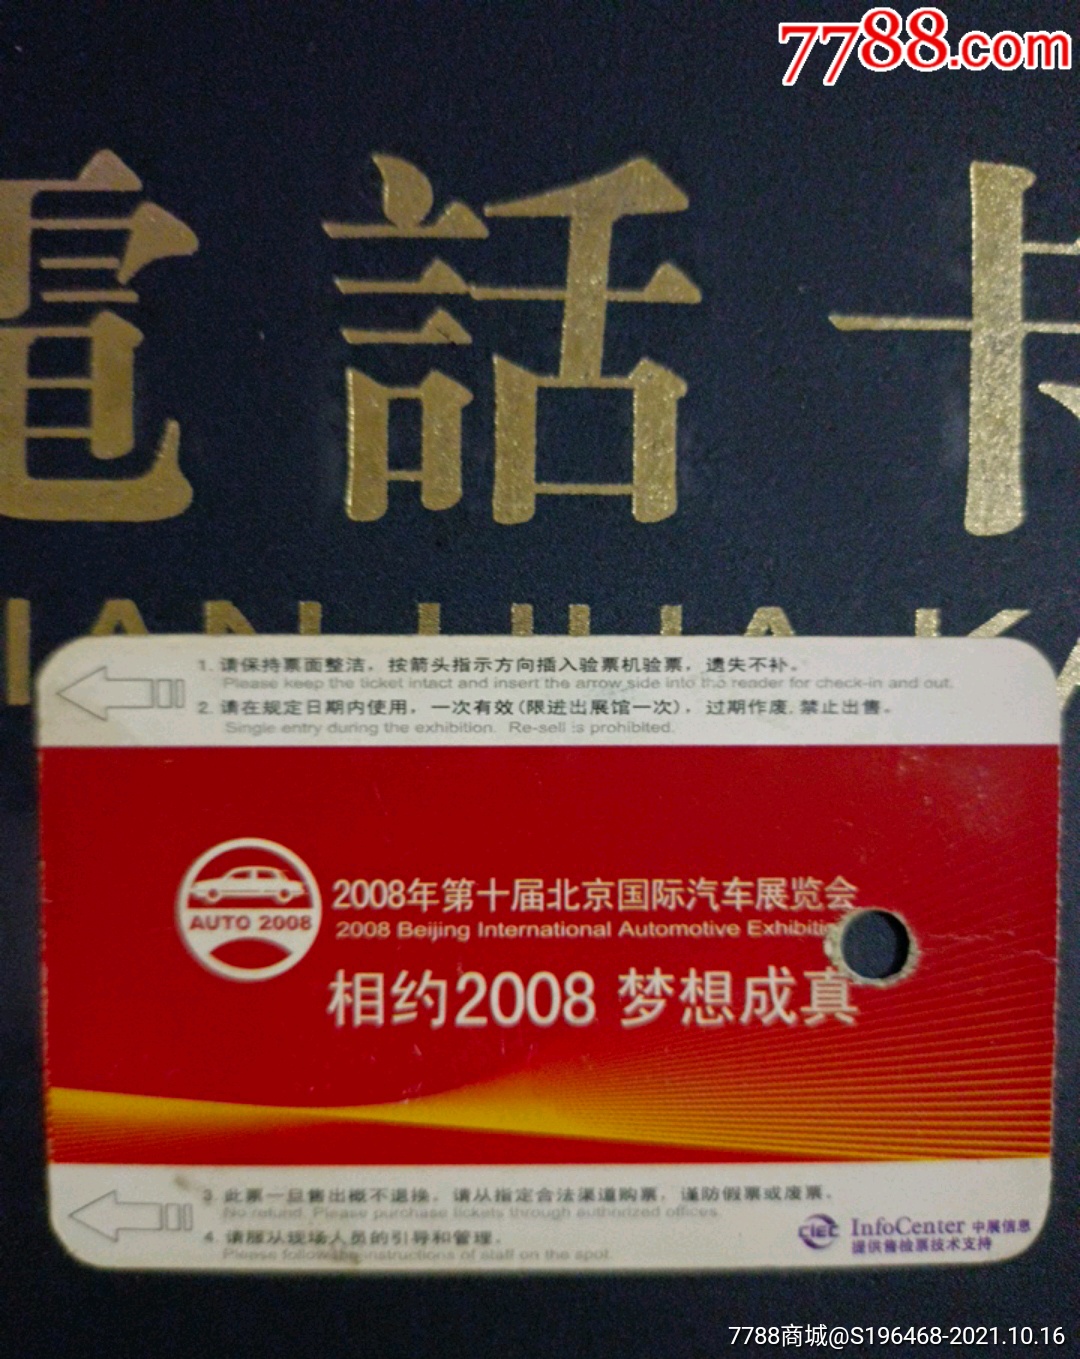 2020年北京车展门票多少钱?附购票入口- 北京本地宝